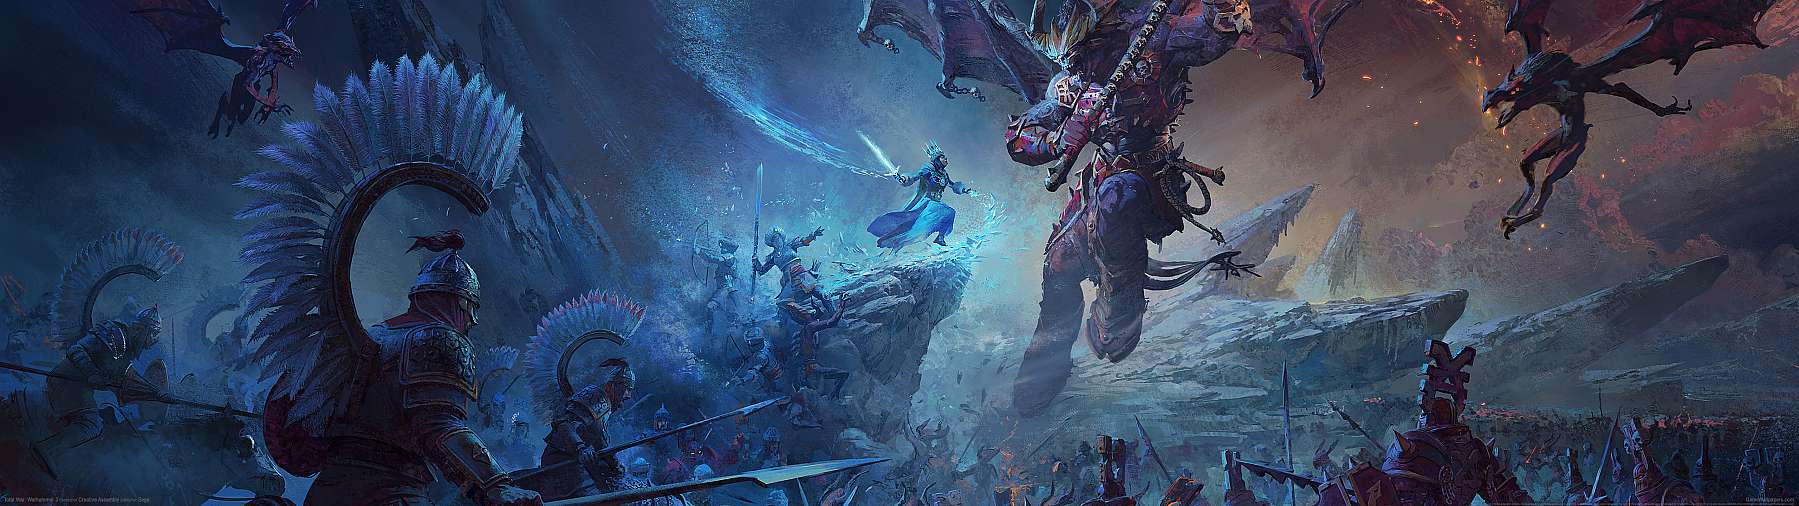 Total War: Warhammer 3 superwide fond d'cran 01